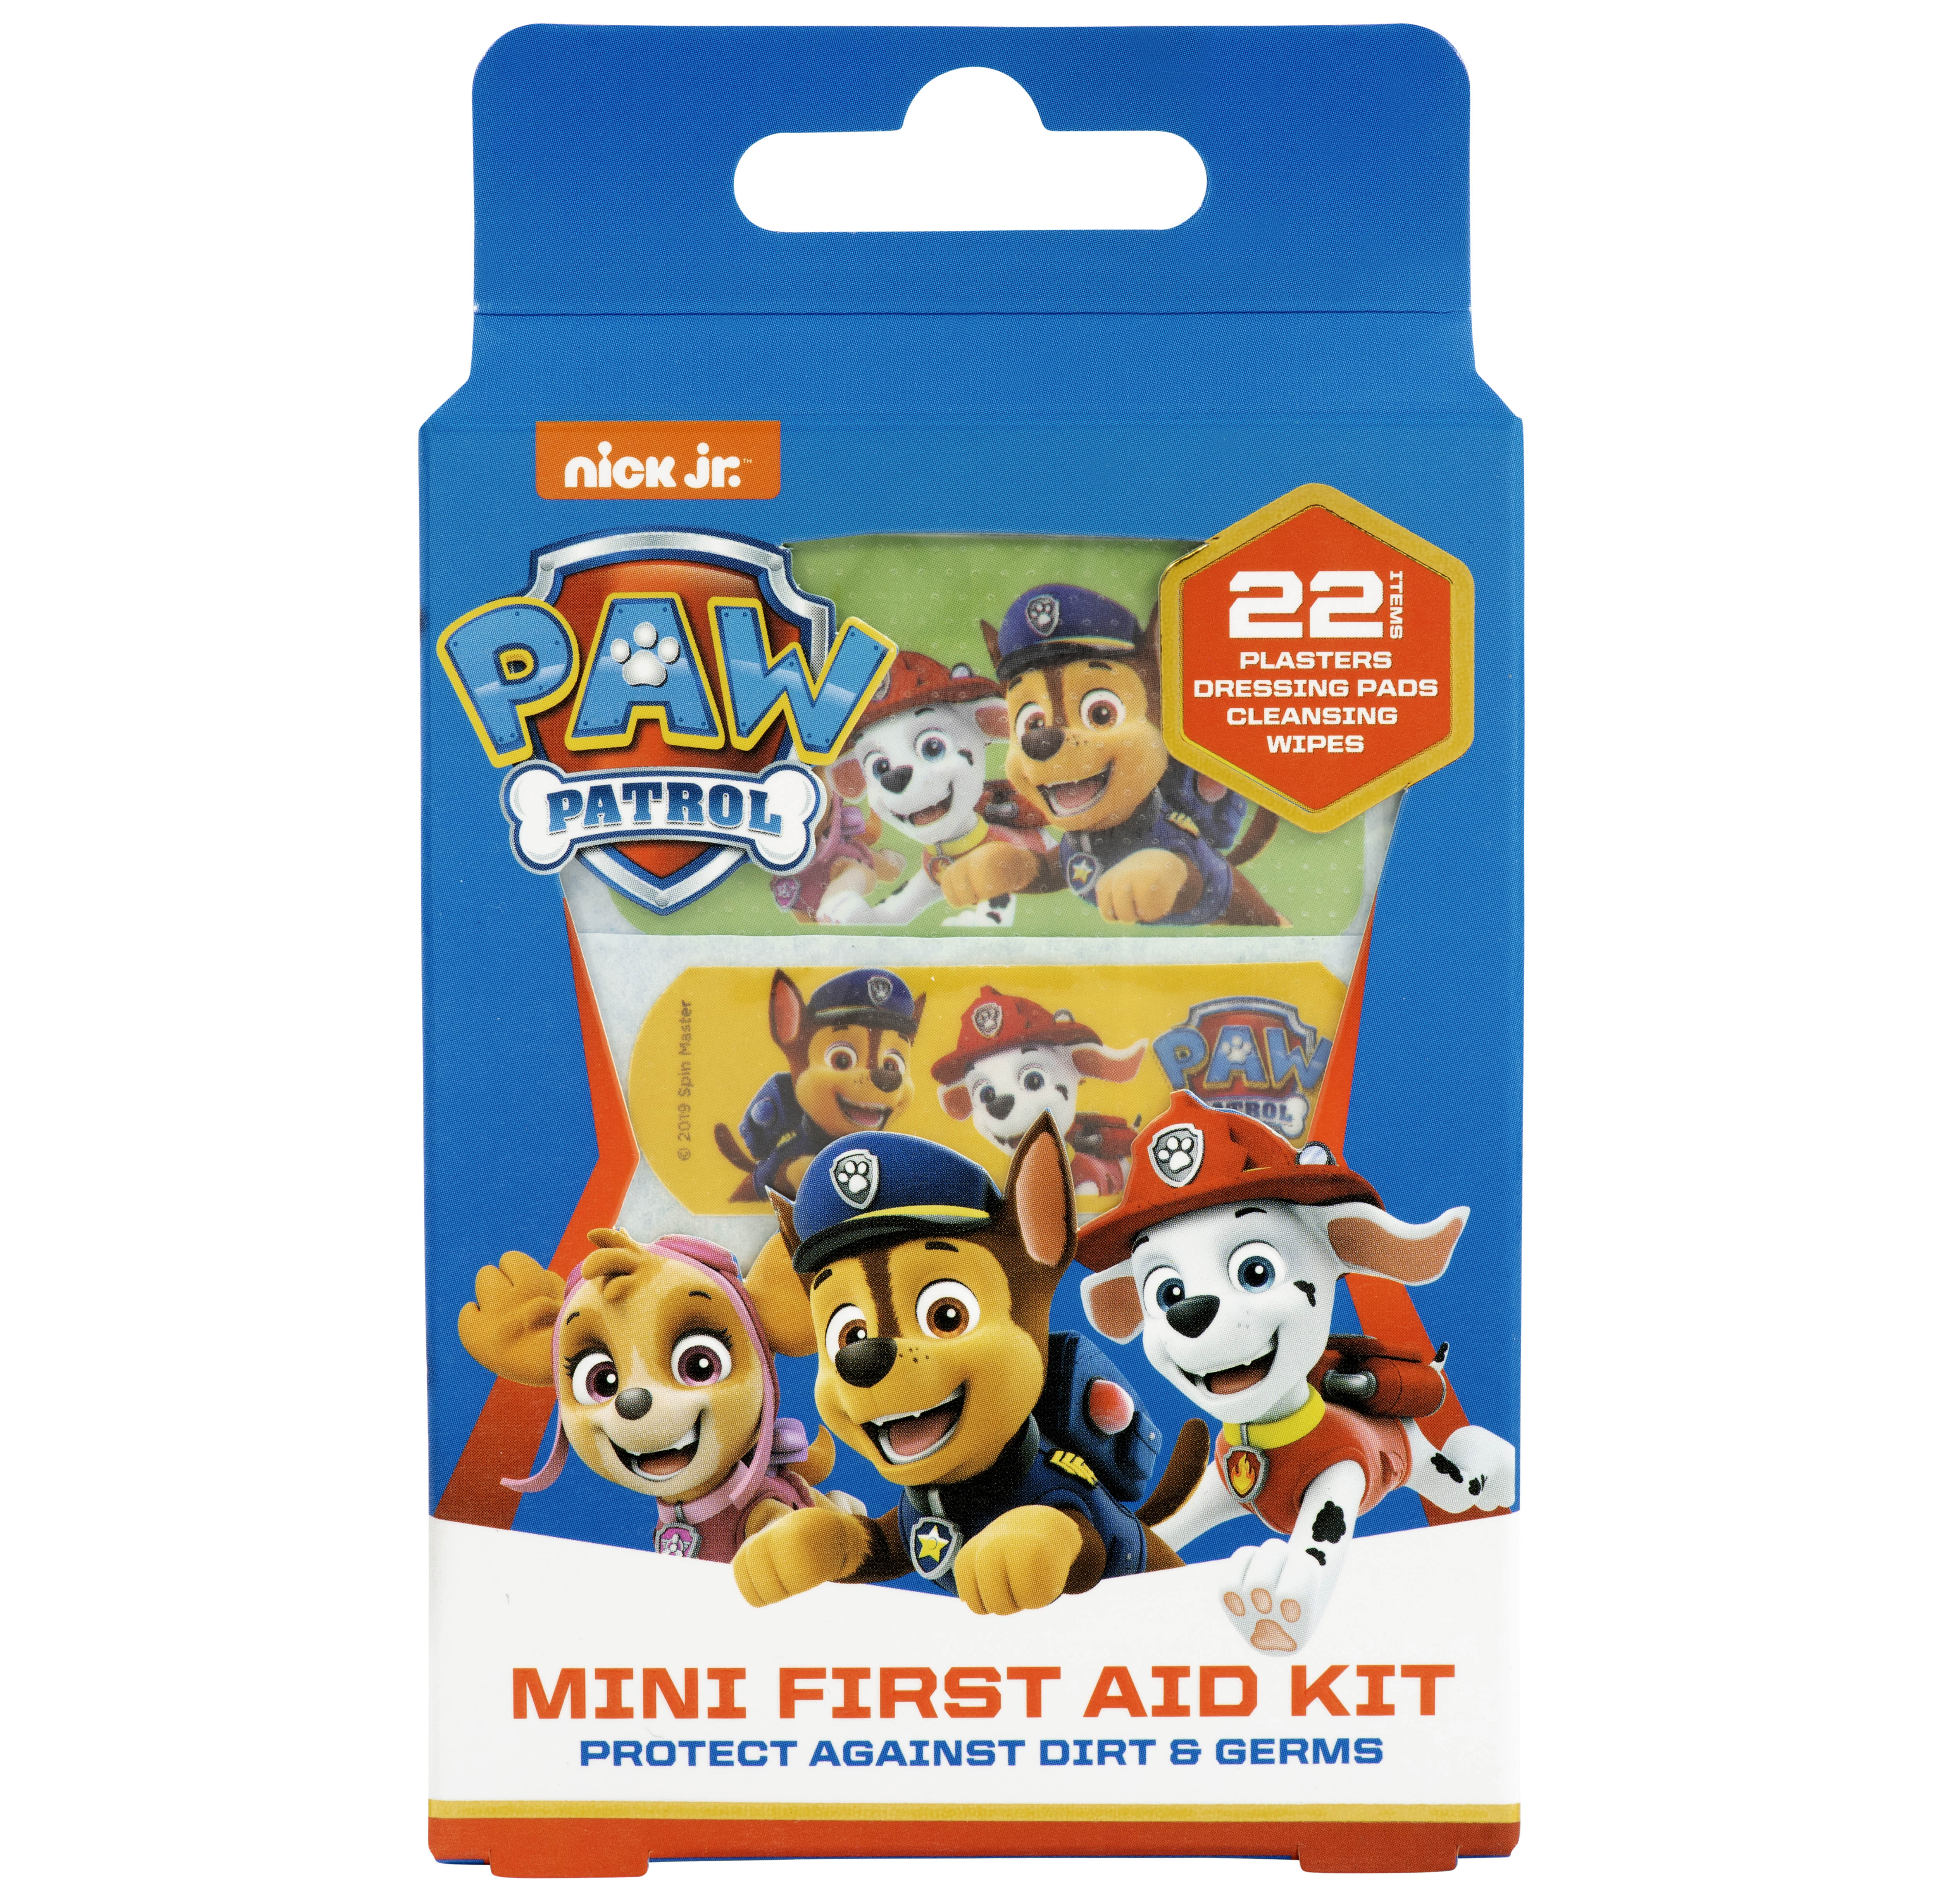 Jellyworks Paw Patrol Plasters Mini First Aid Kit